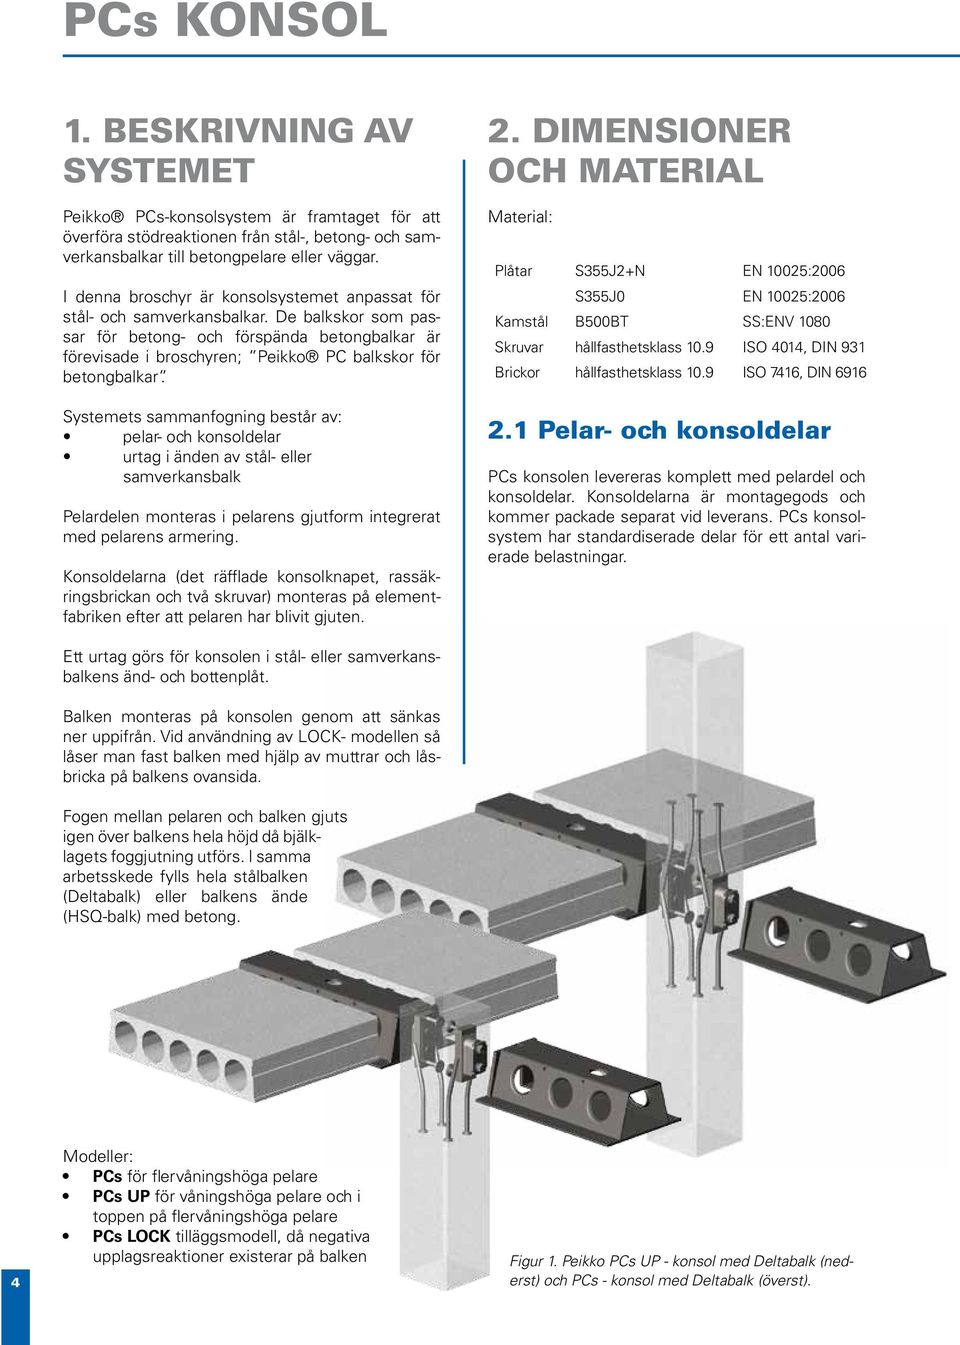 De balkskor som passar för betong- och förspända betongbalkar är förevisade i broschyren; Peikko PC balkskor för betongbalkar.